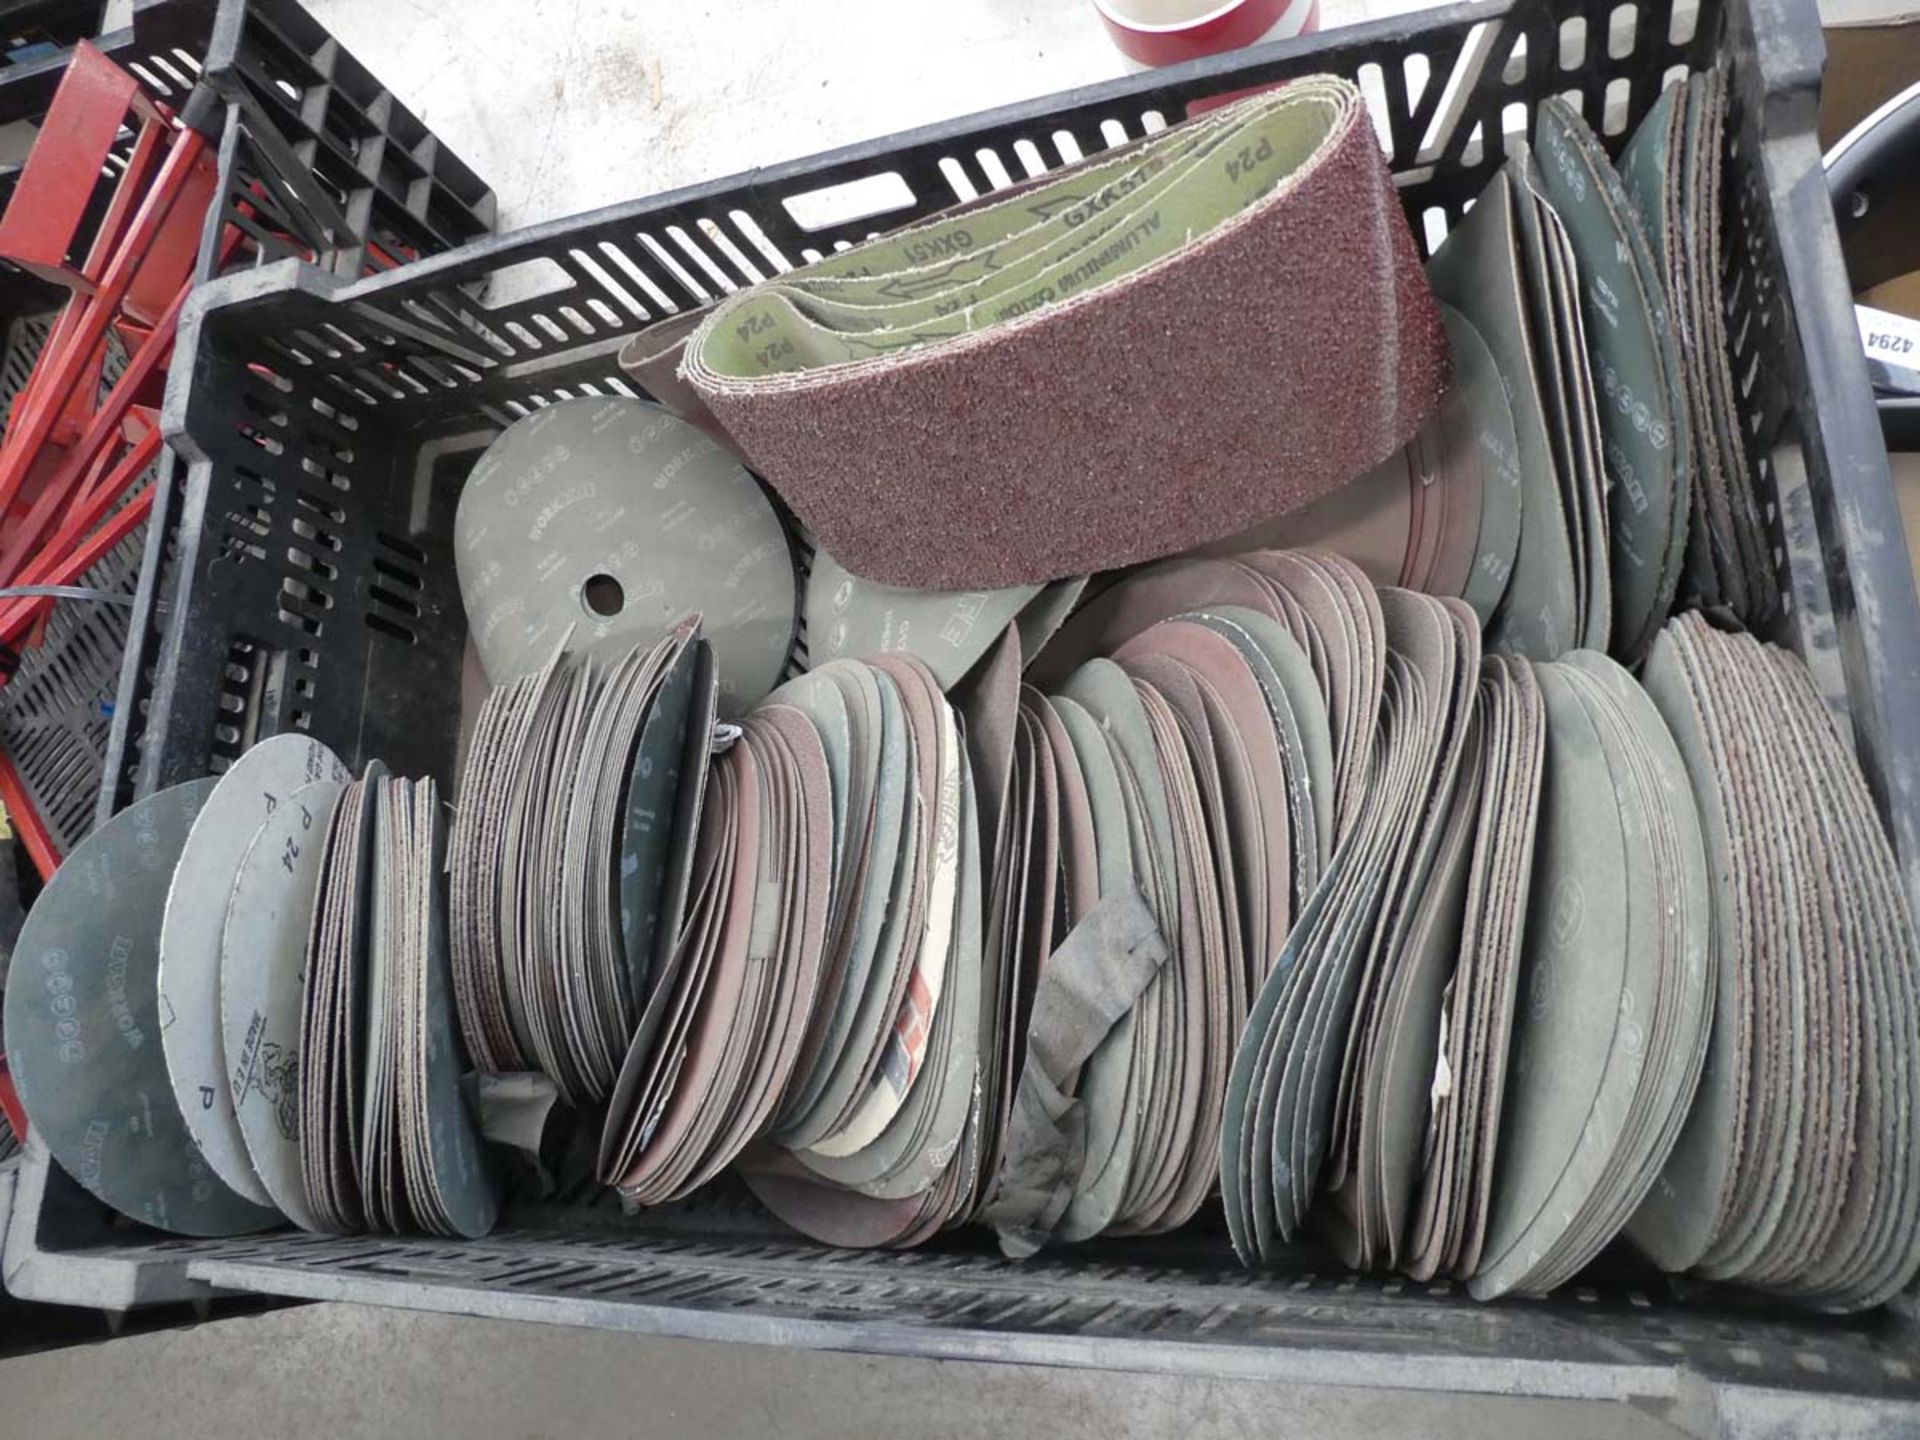 Crate of sanding discs